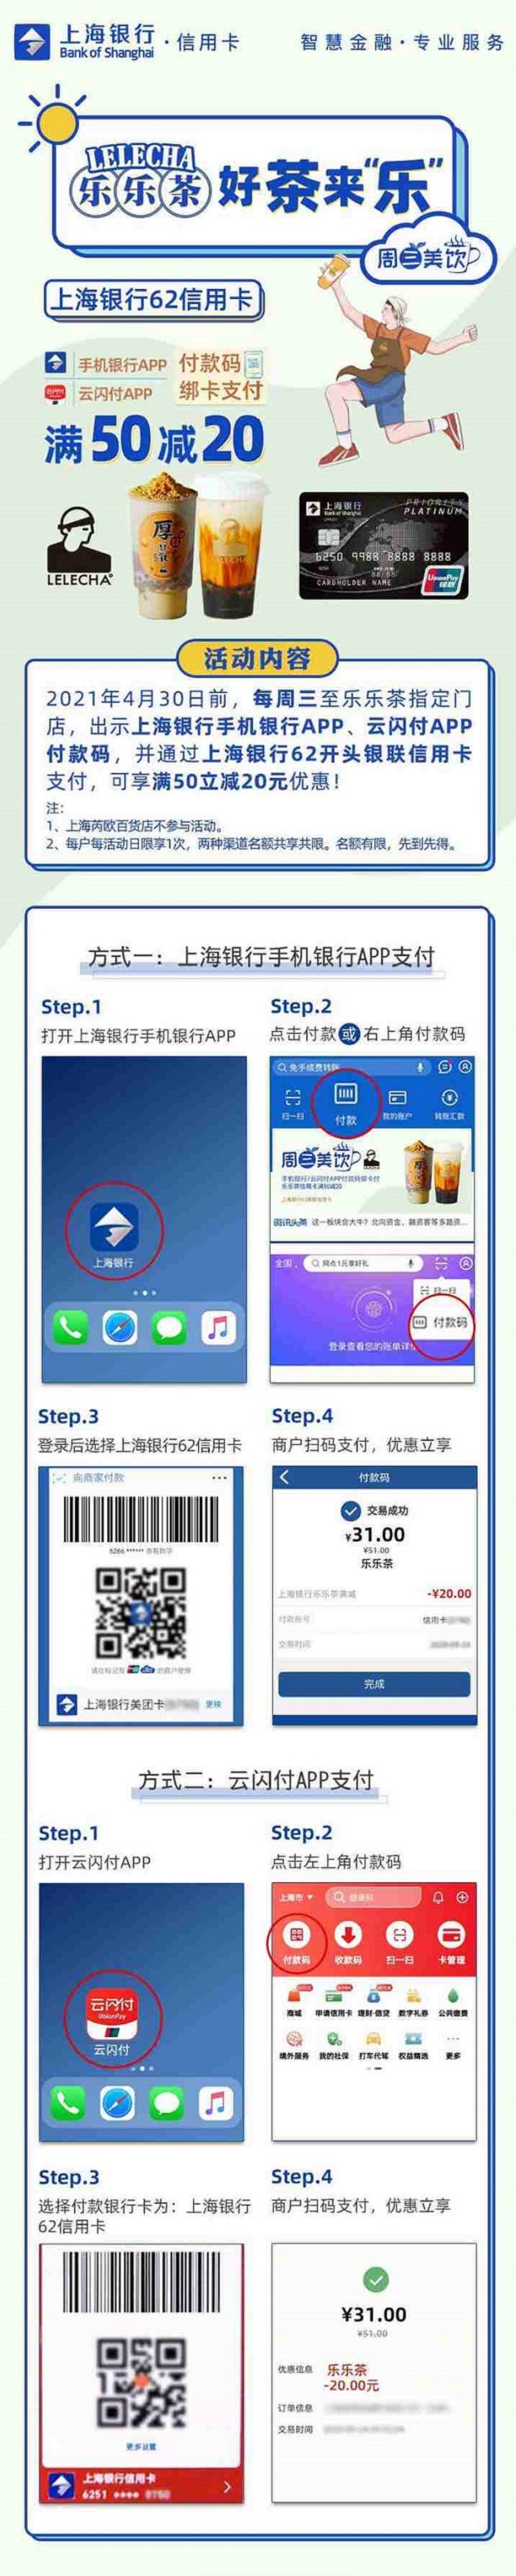 上海银行信用卡乐乐茶每周三满50减20元！上海银行62信用卡